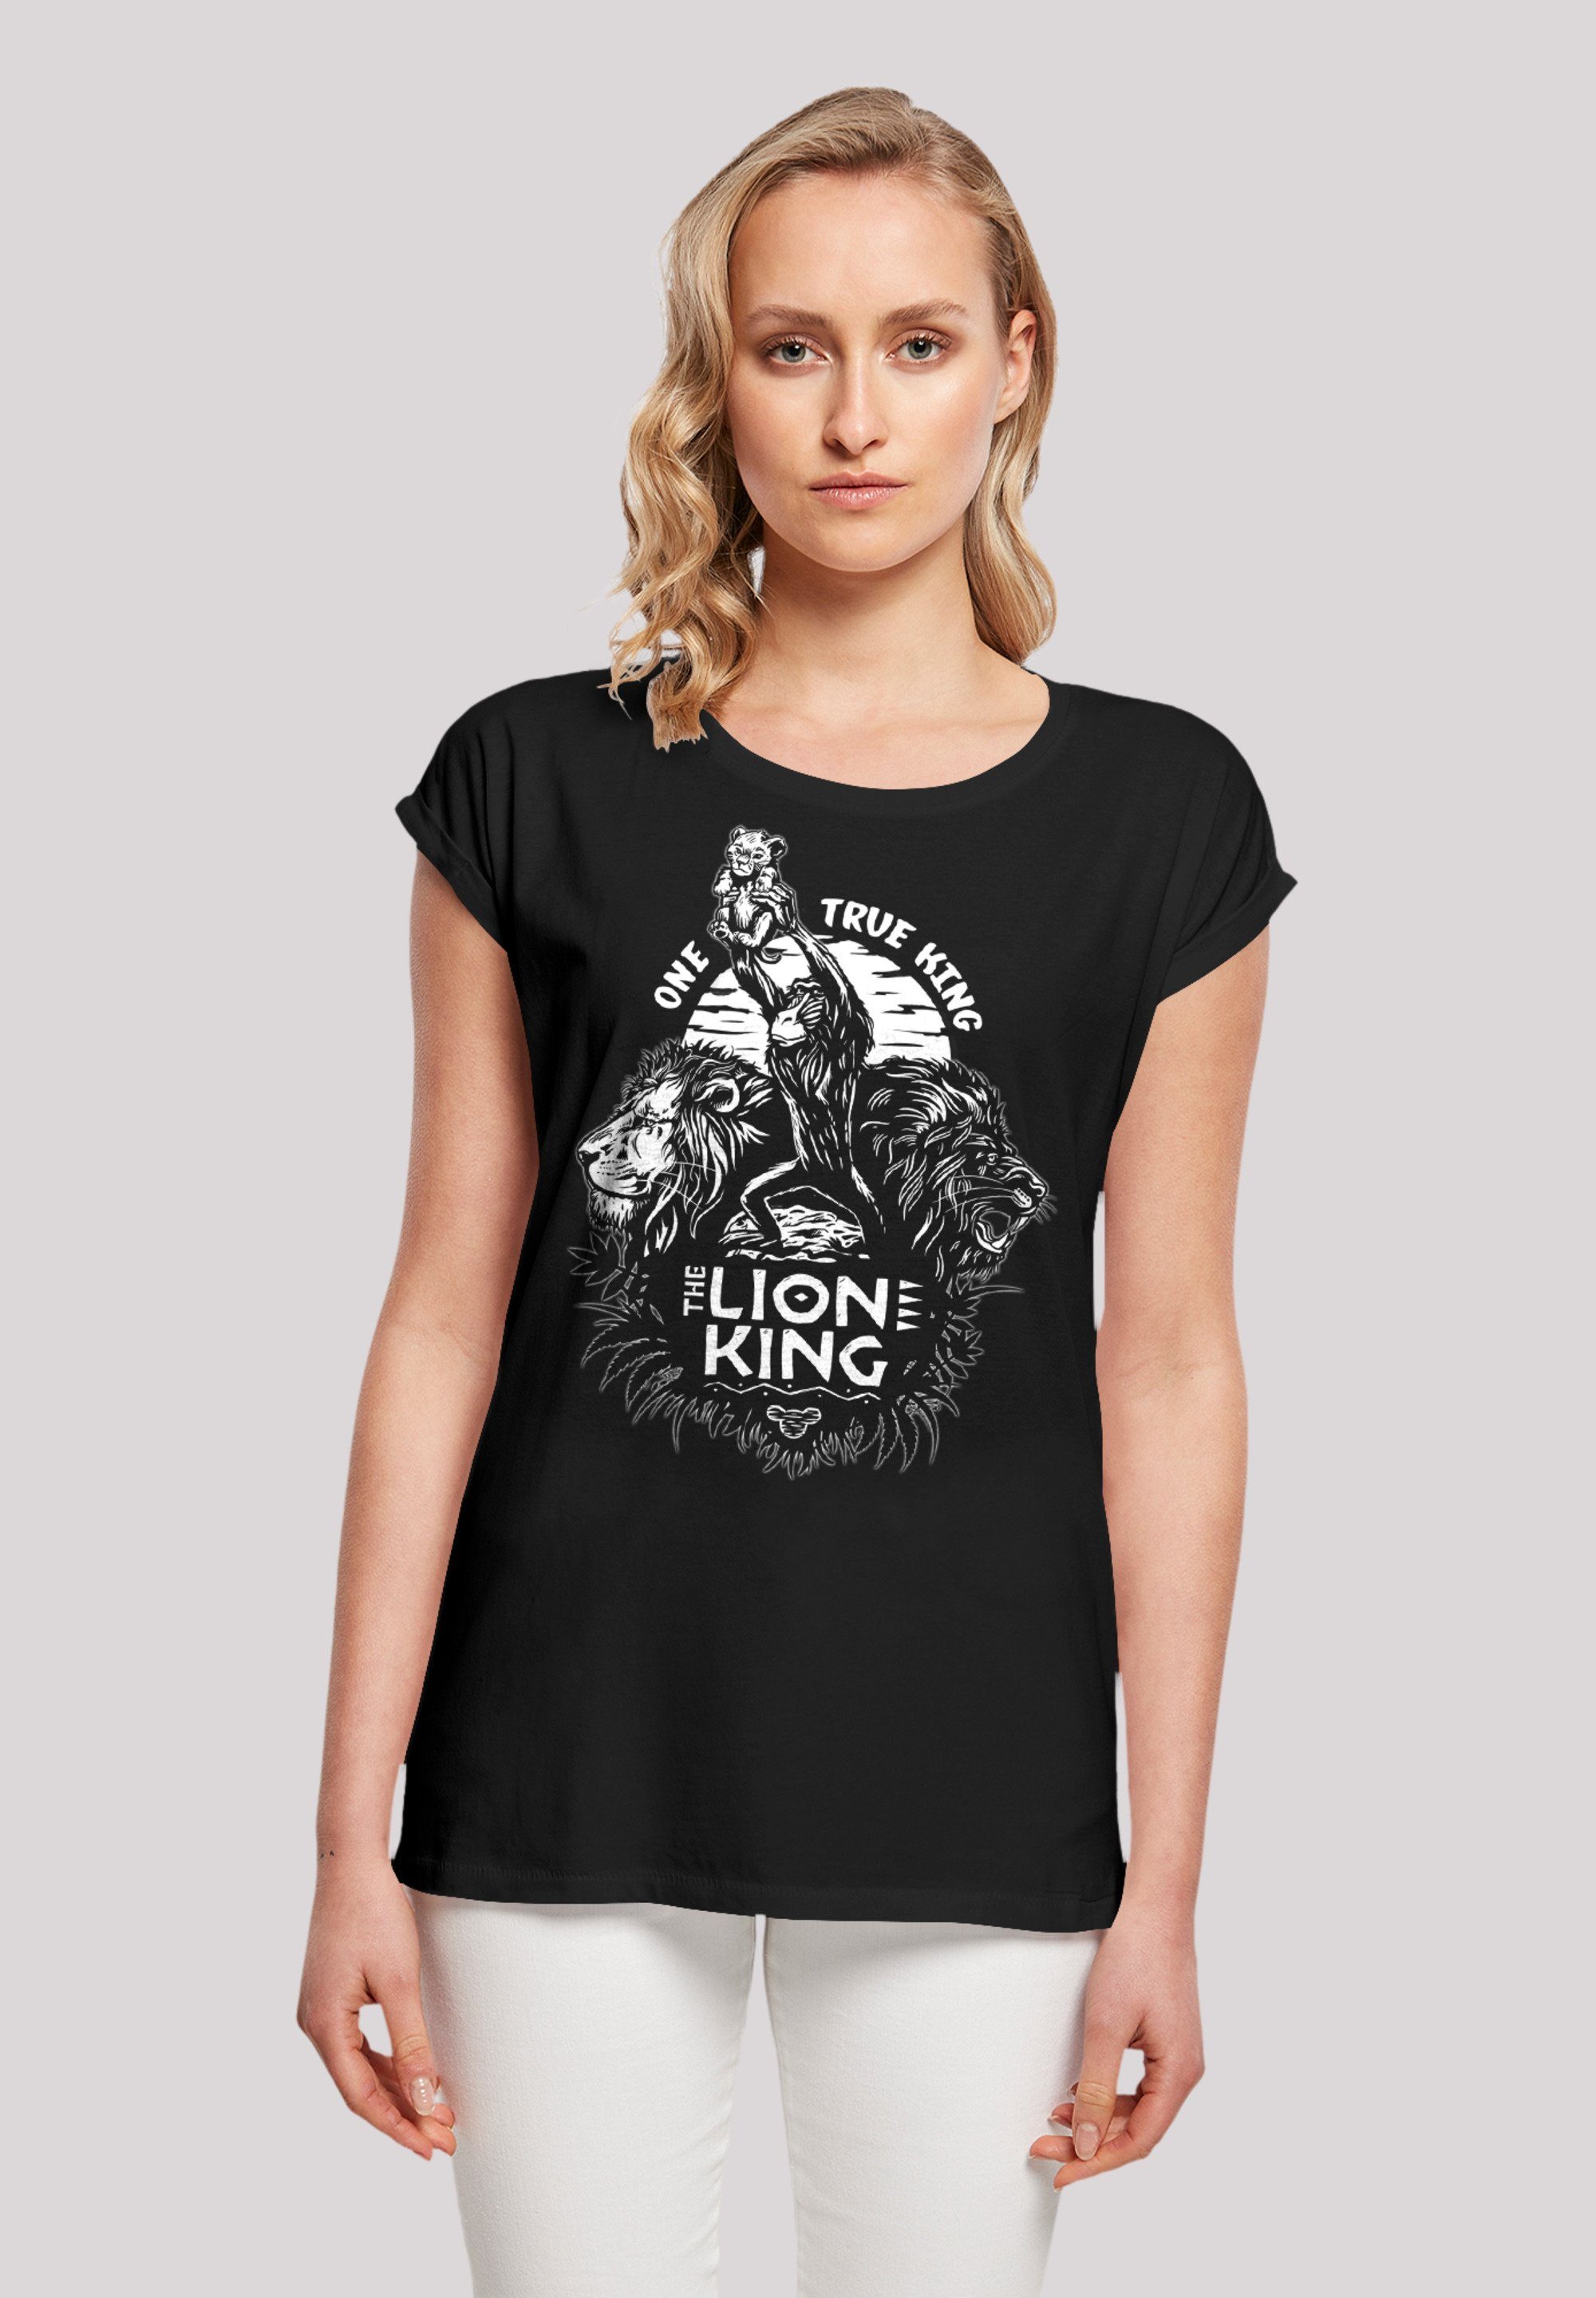 F4NT4STIC T-Shirt Disney König der Löwen One True King Premium Qualität,  Sehr weicher Baumwollstoff mit hohem Tragekomfort